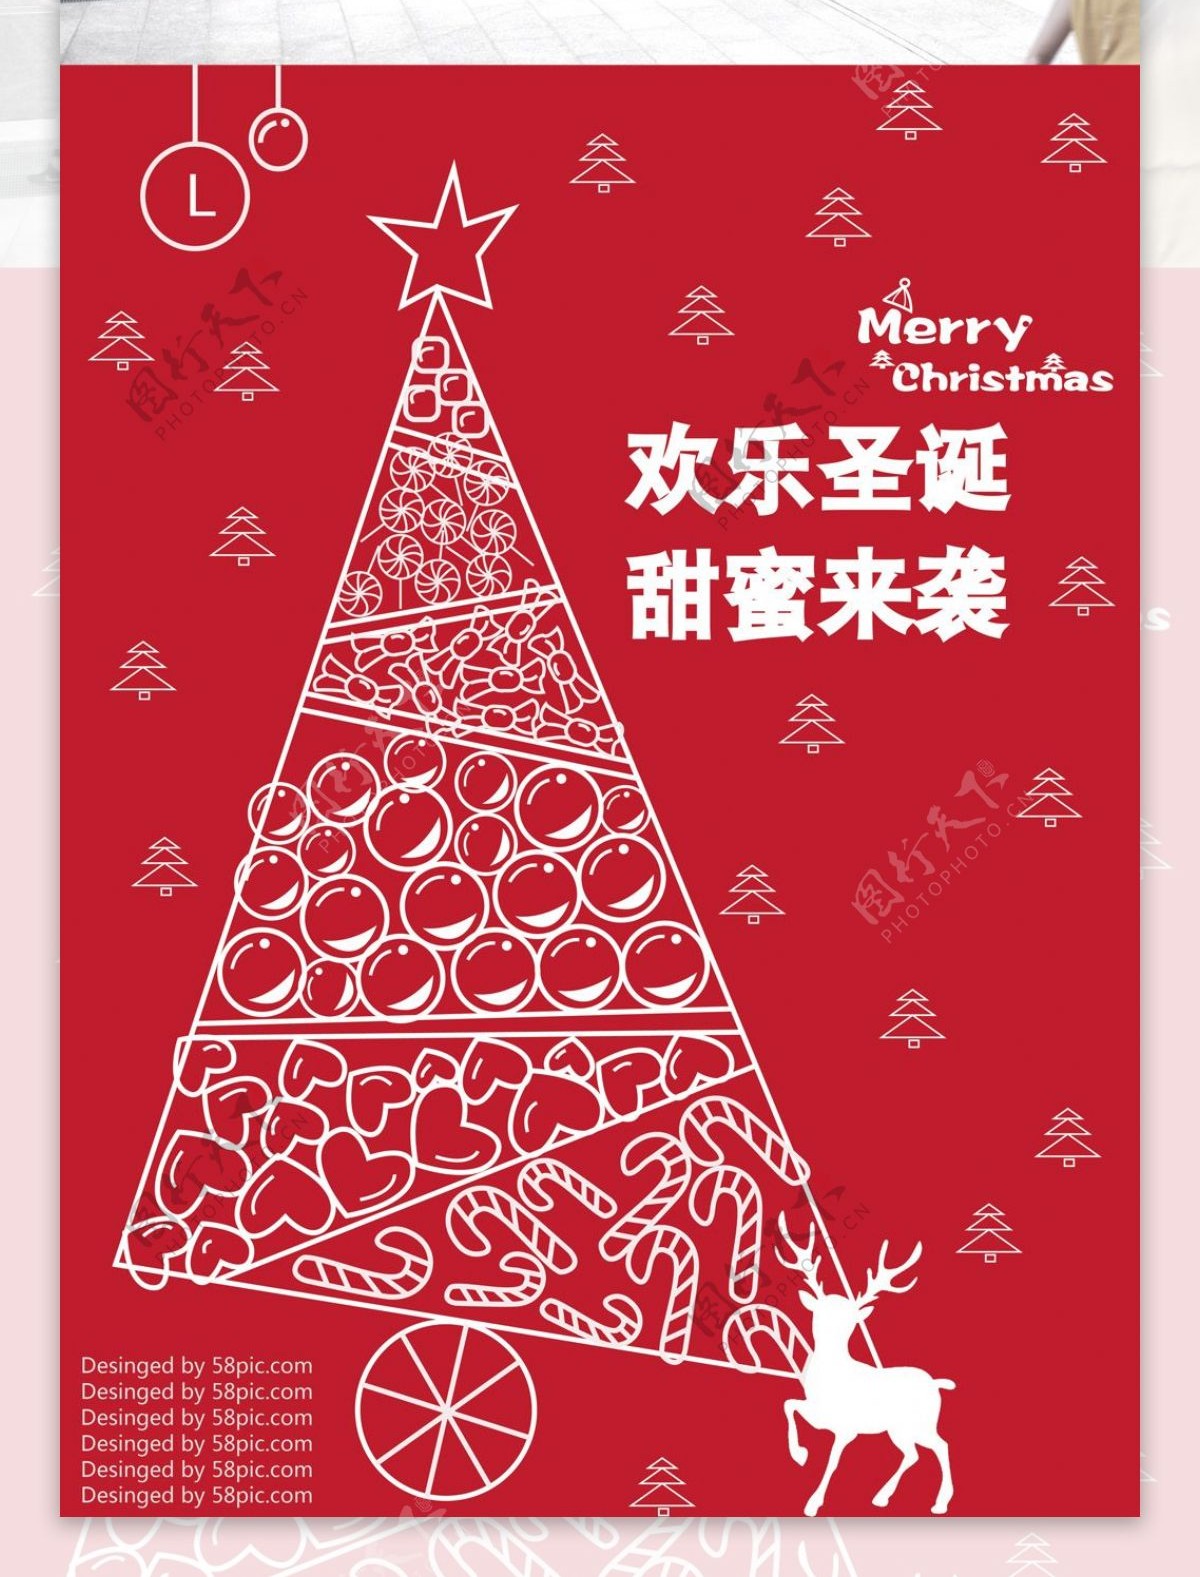 原创插画圣诞节促销海报红色甜蜜圣诞节日